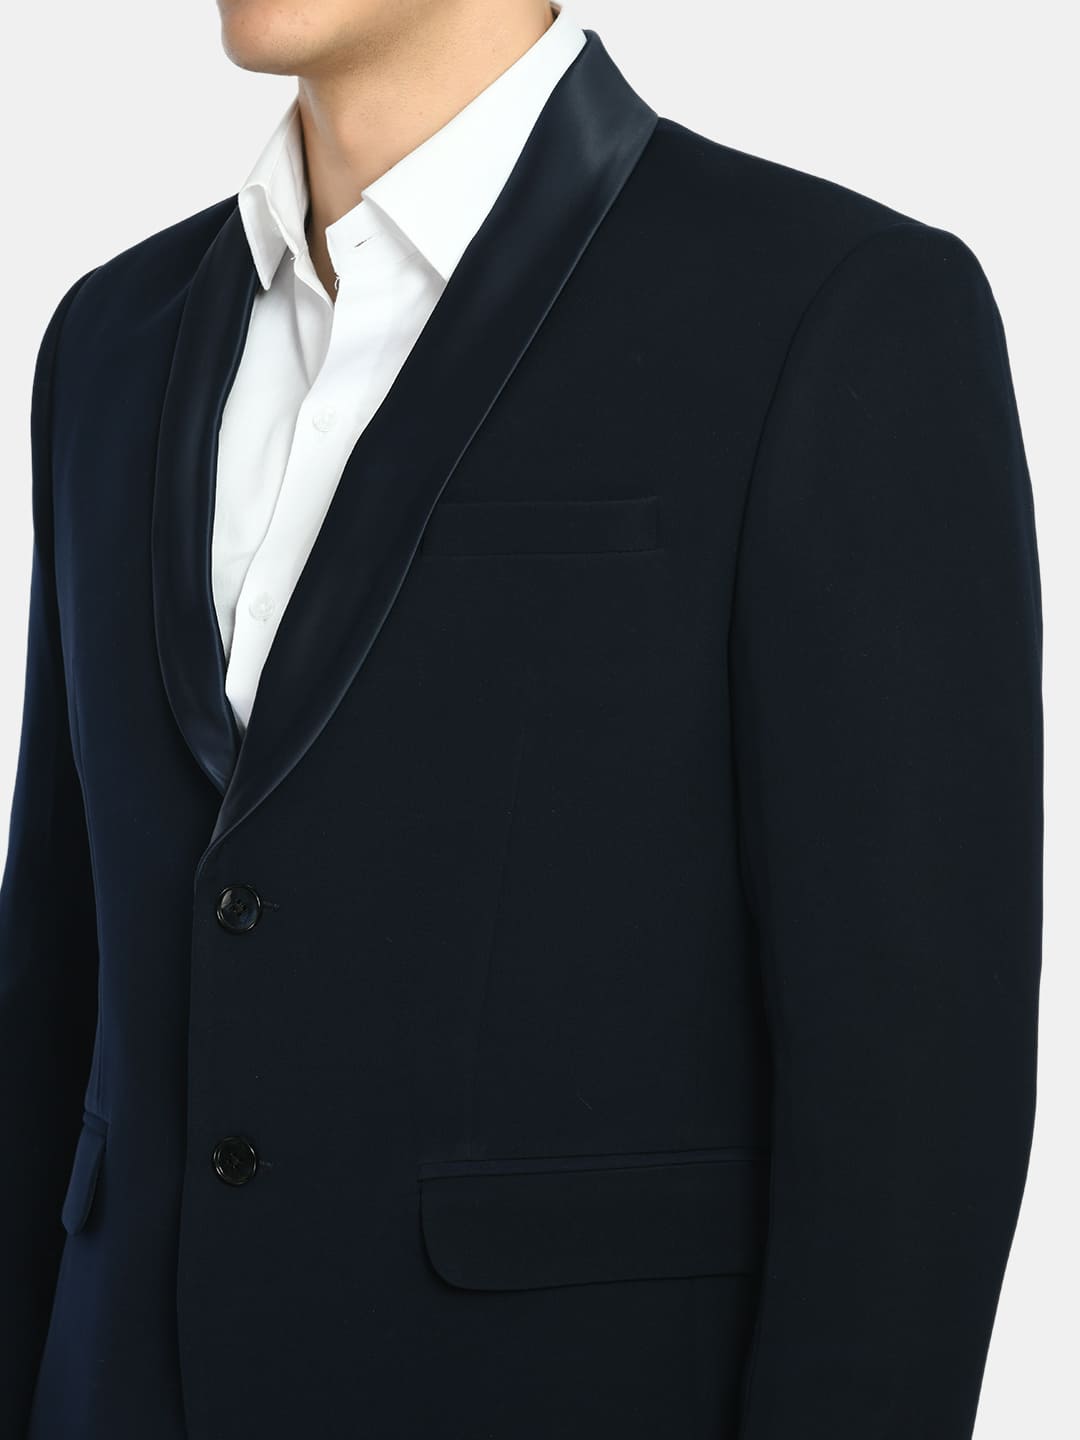 Dark Blue Italian Tuxedo Slim Fit Suit